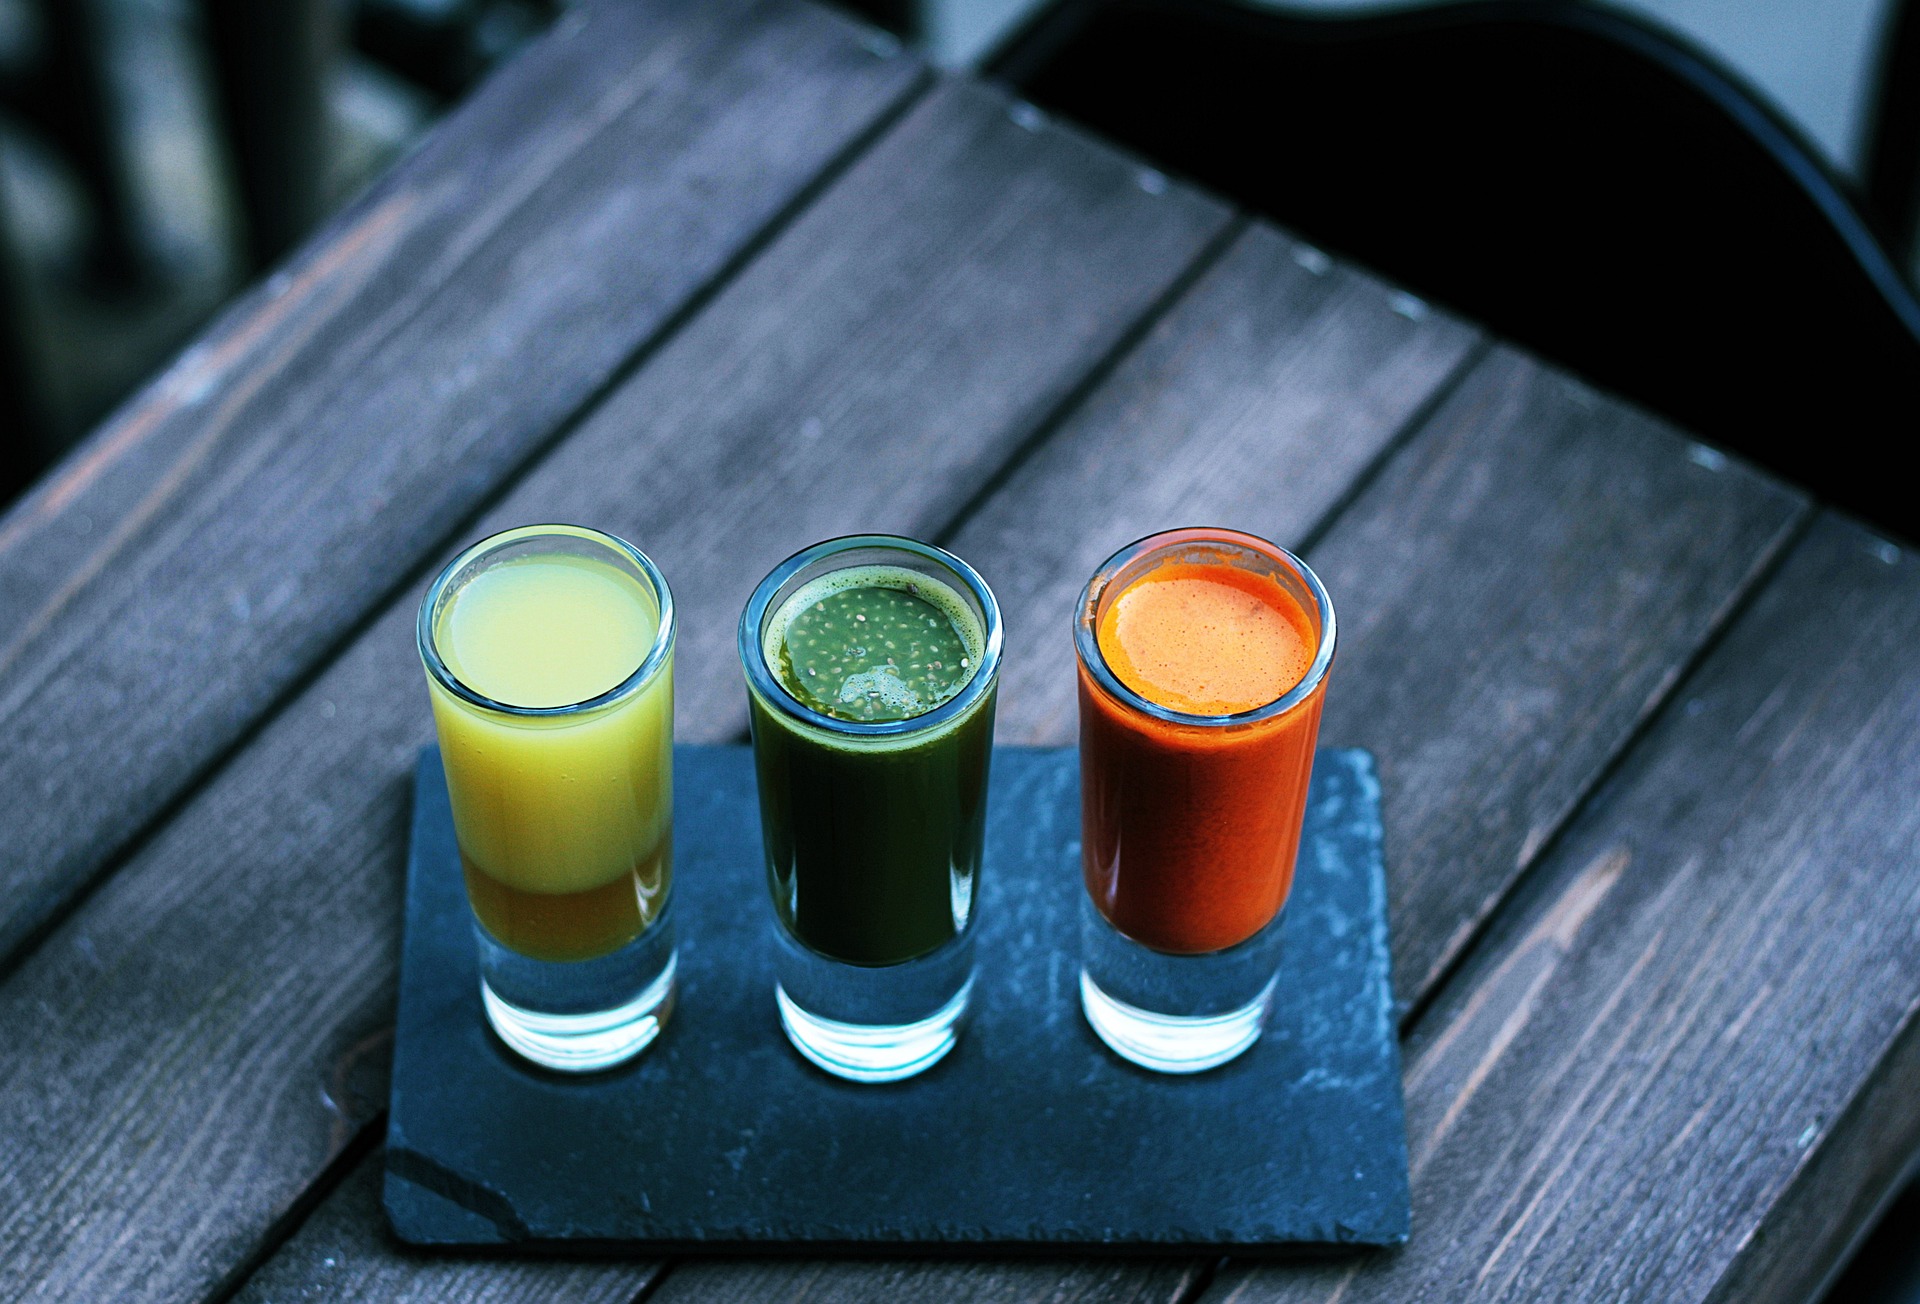 trzy szklanki ze świeżo wyciskanymi sokami owocowymi